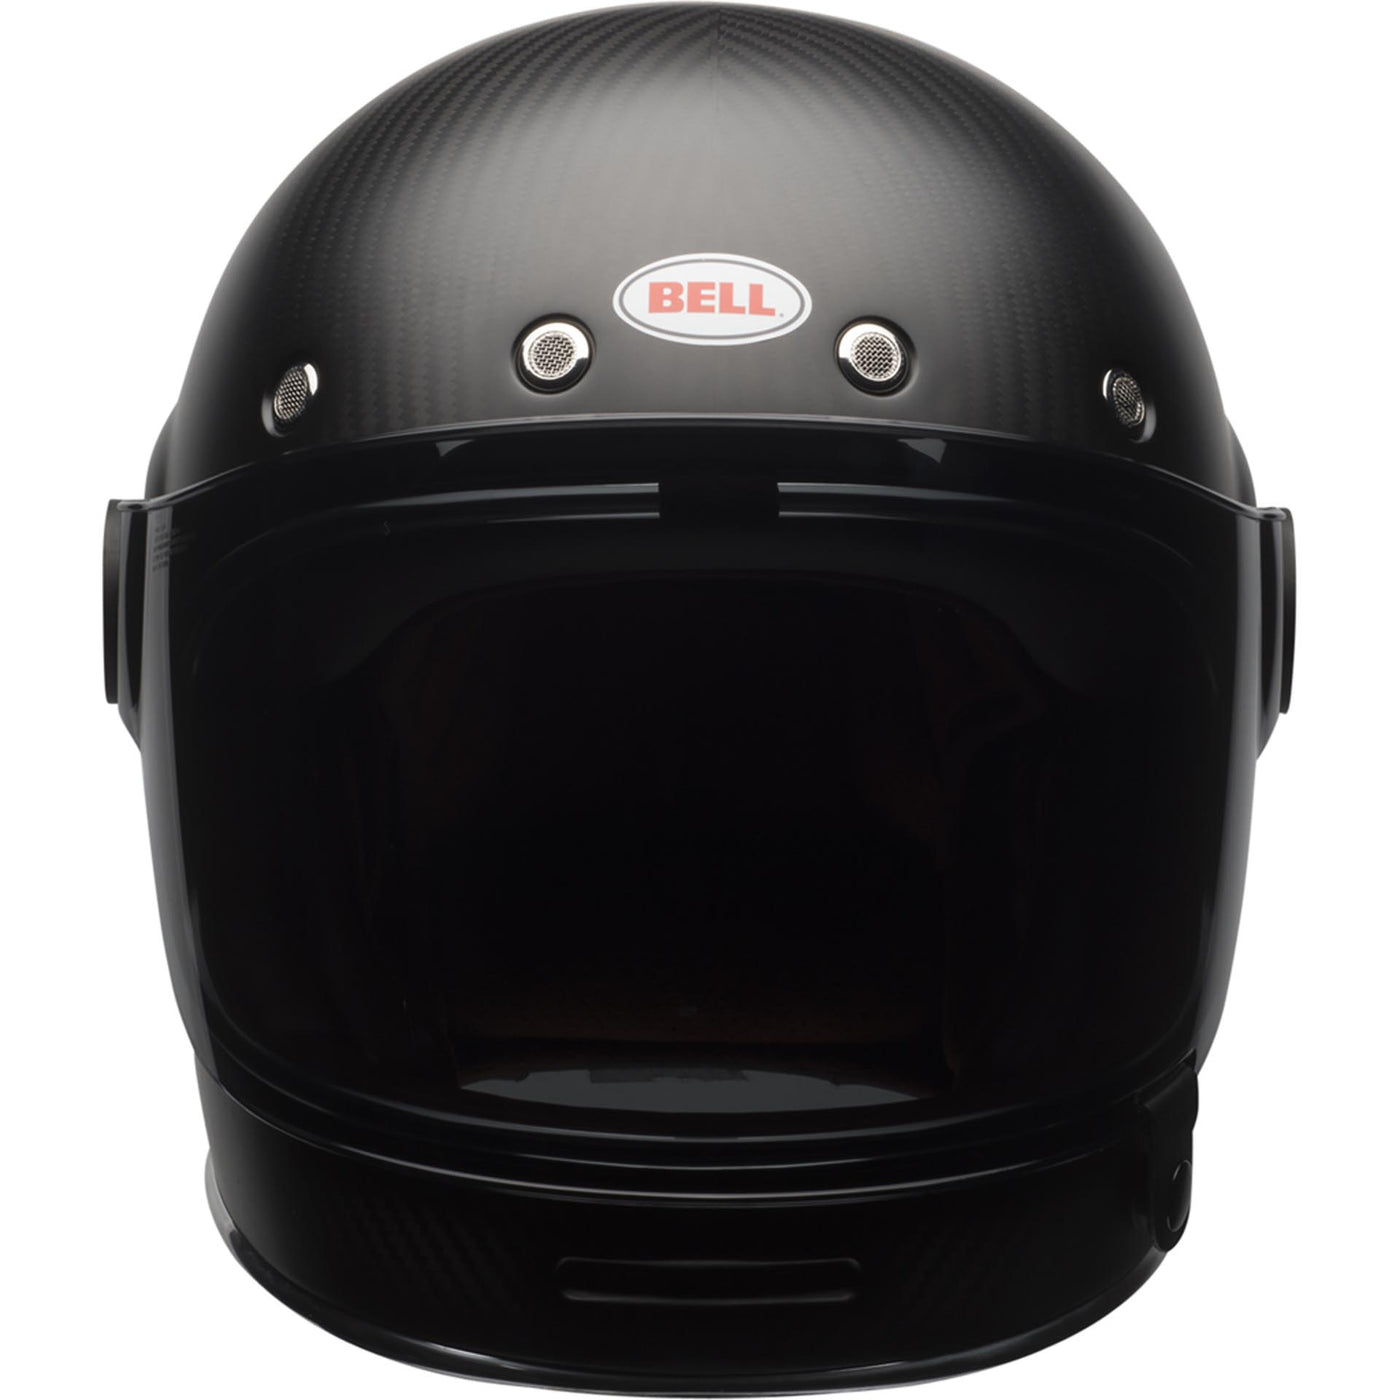 Bell Bullitt Carbon Motorcycle Full Face Helmet Matte Carbon